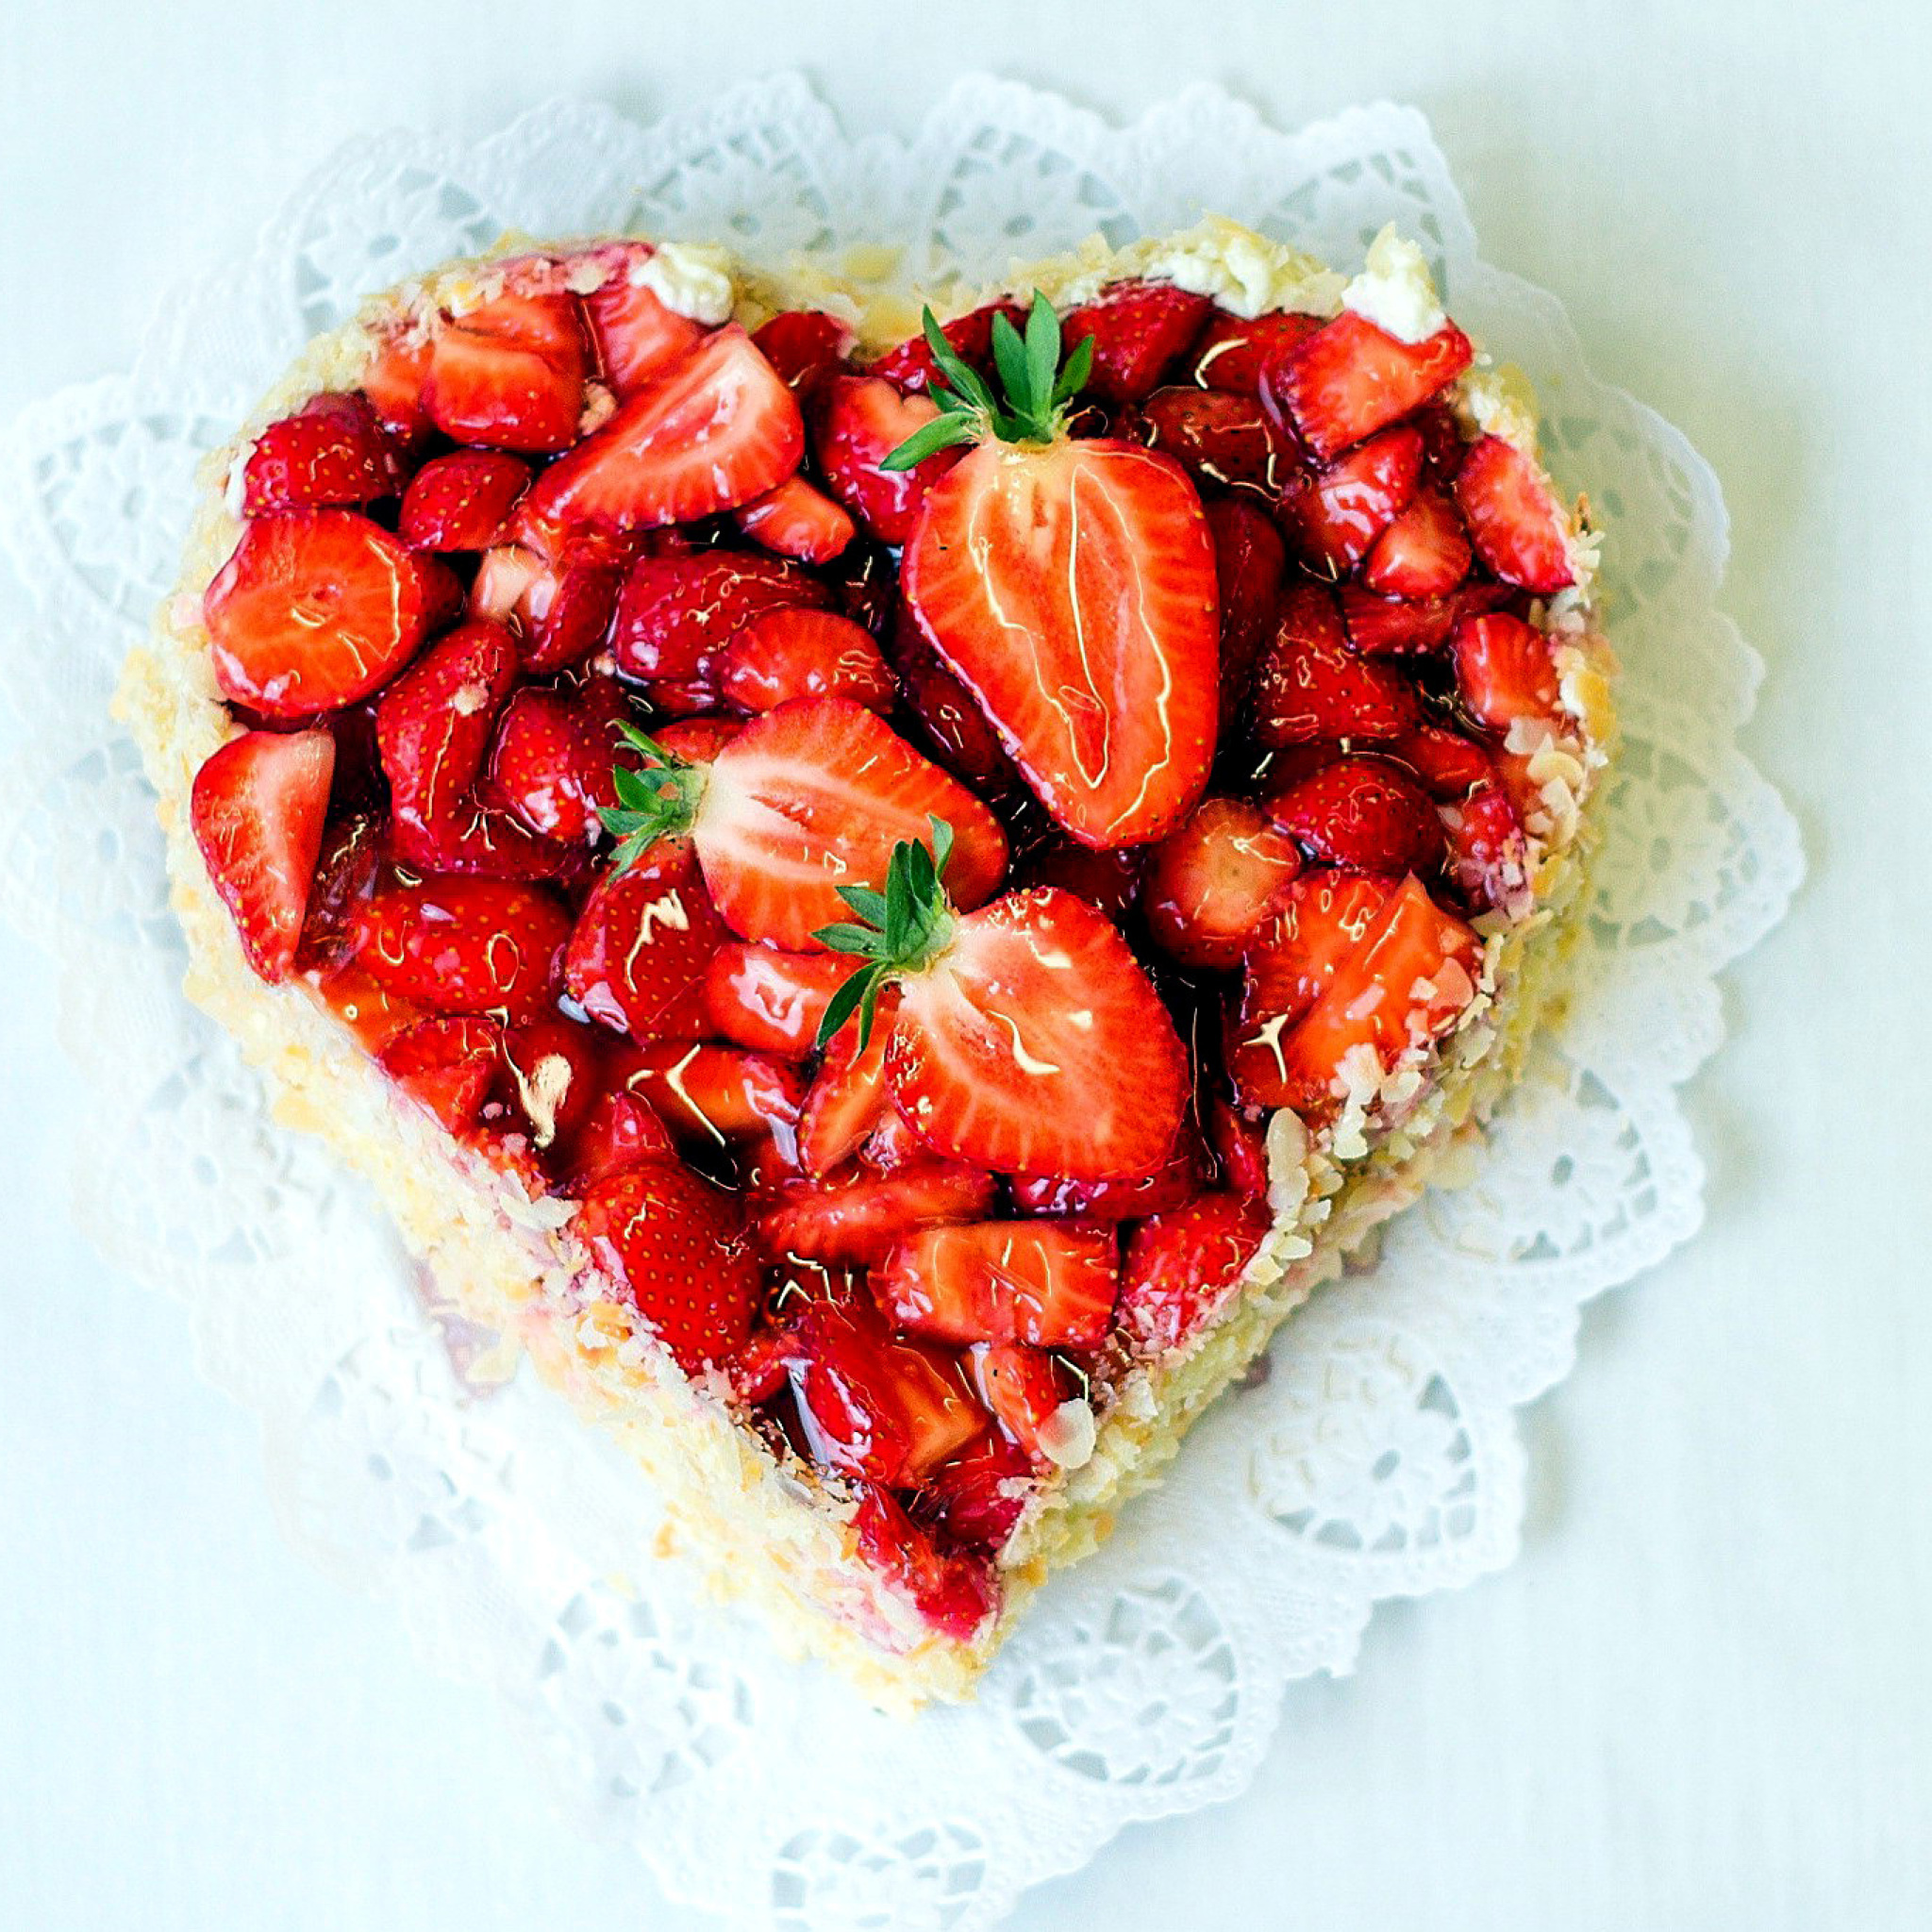 Sfondi Heart Cake with strawberries 2048x2048